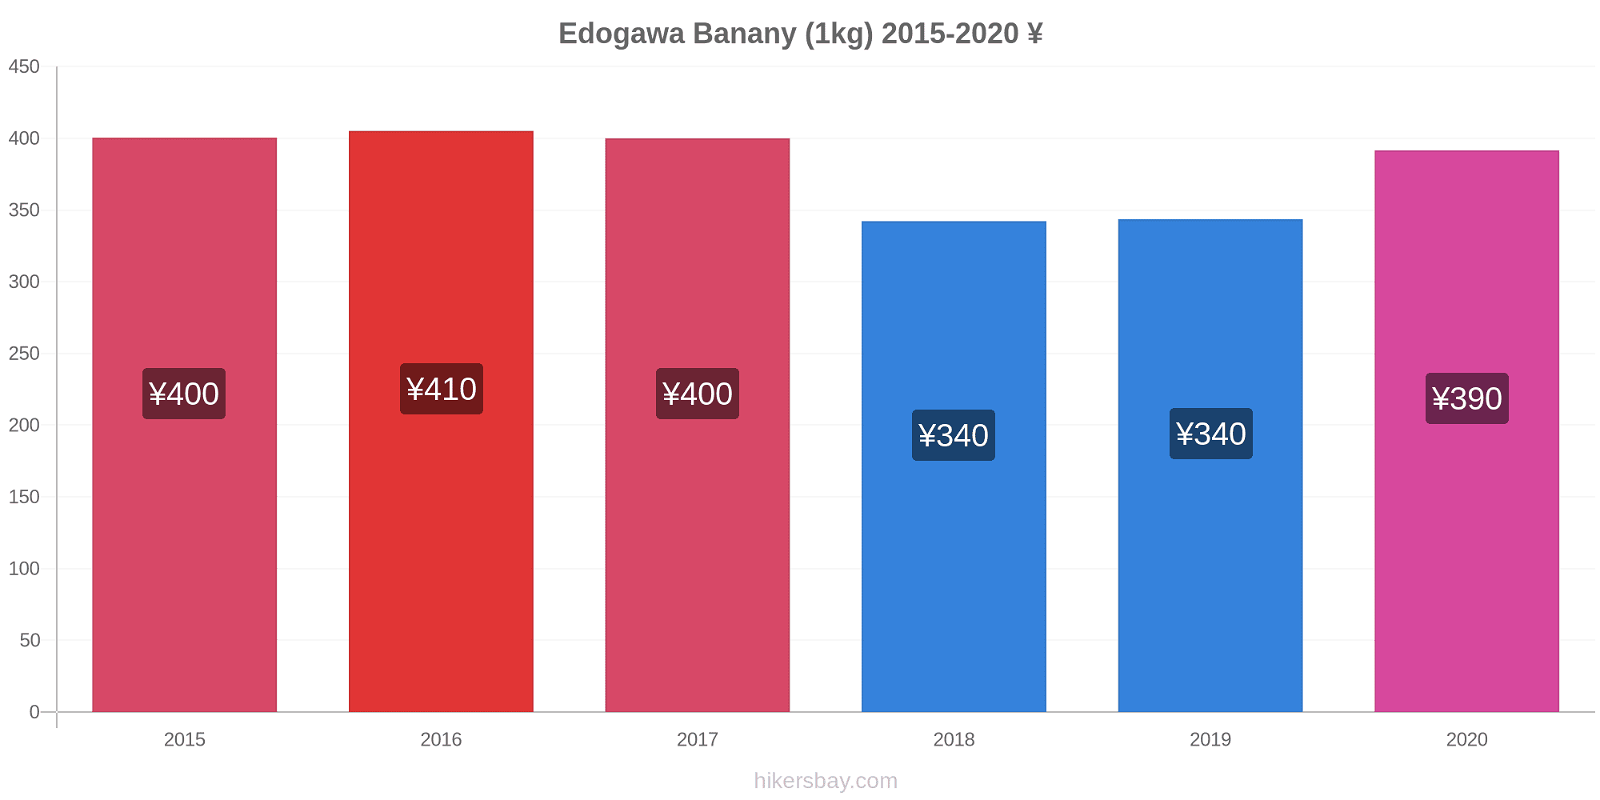 Edogawa zmiany cen Banany (1kg) hikersbay.com